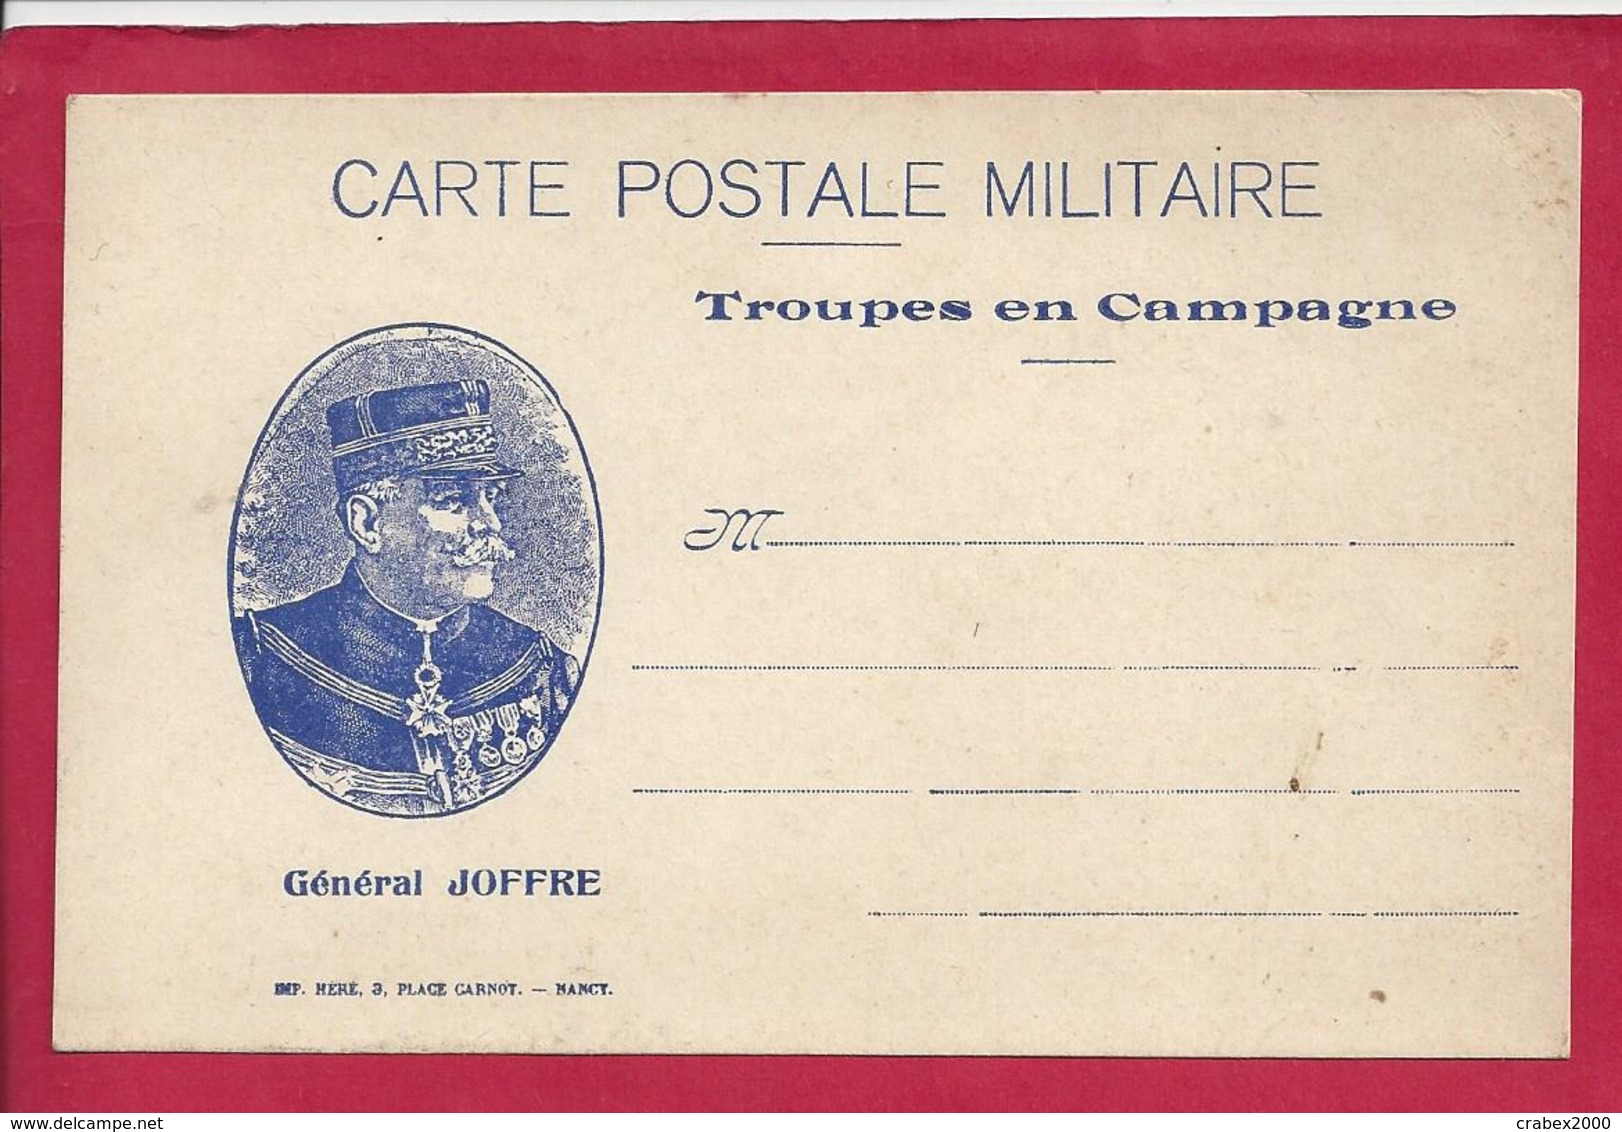 FM CARTE POSTALE DE FRANCHISE (JOFFRE) MILITAIRE VIERGE - Storia Postale